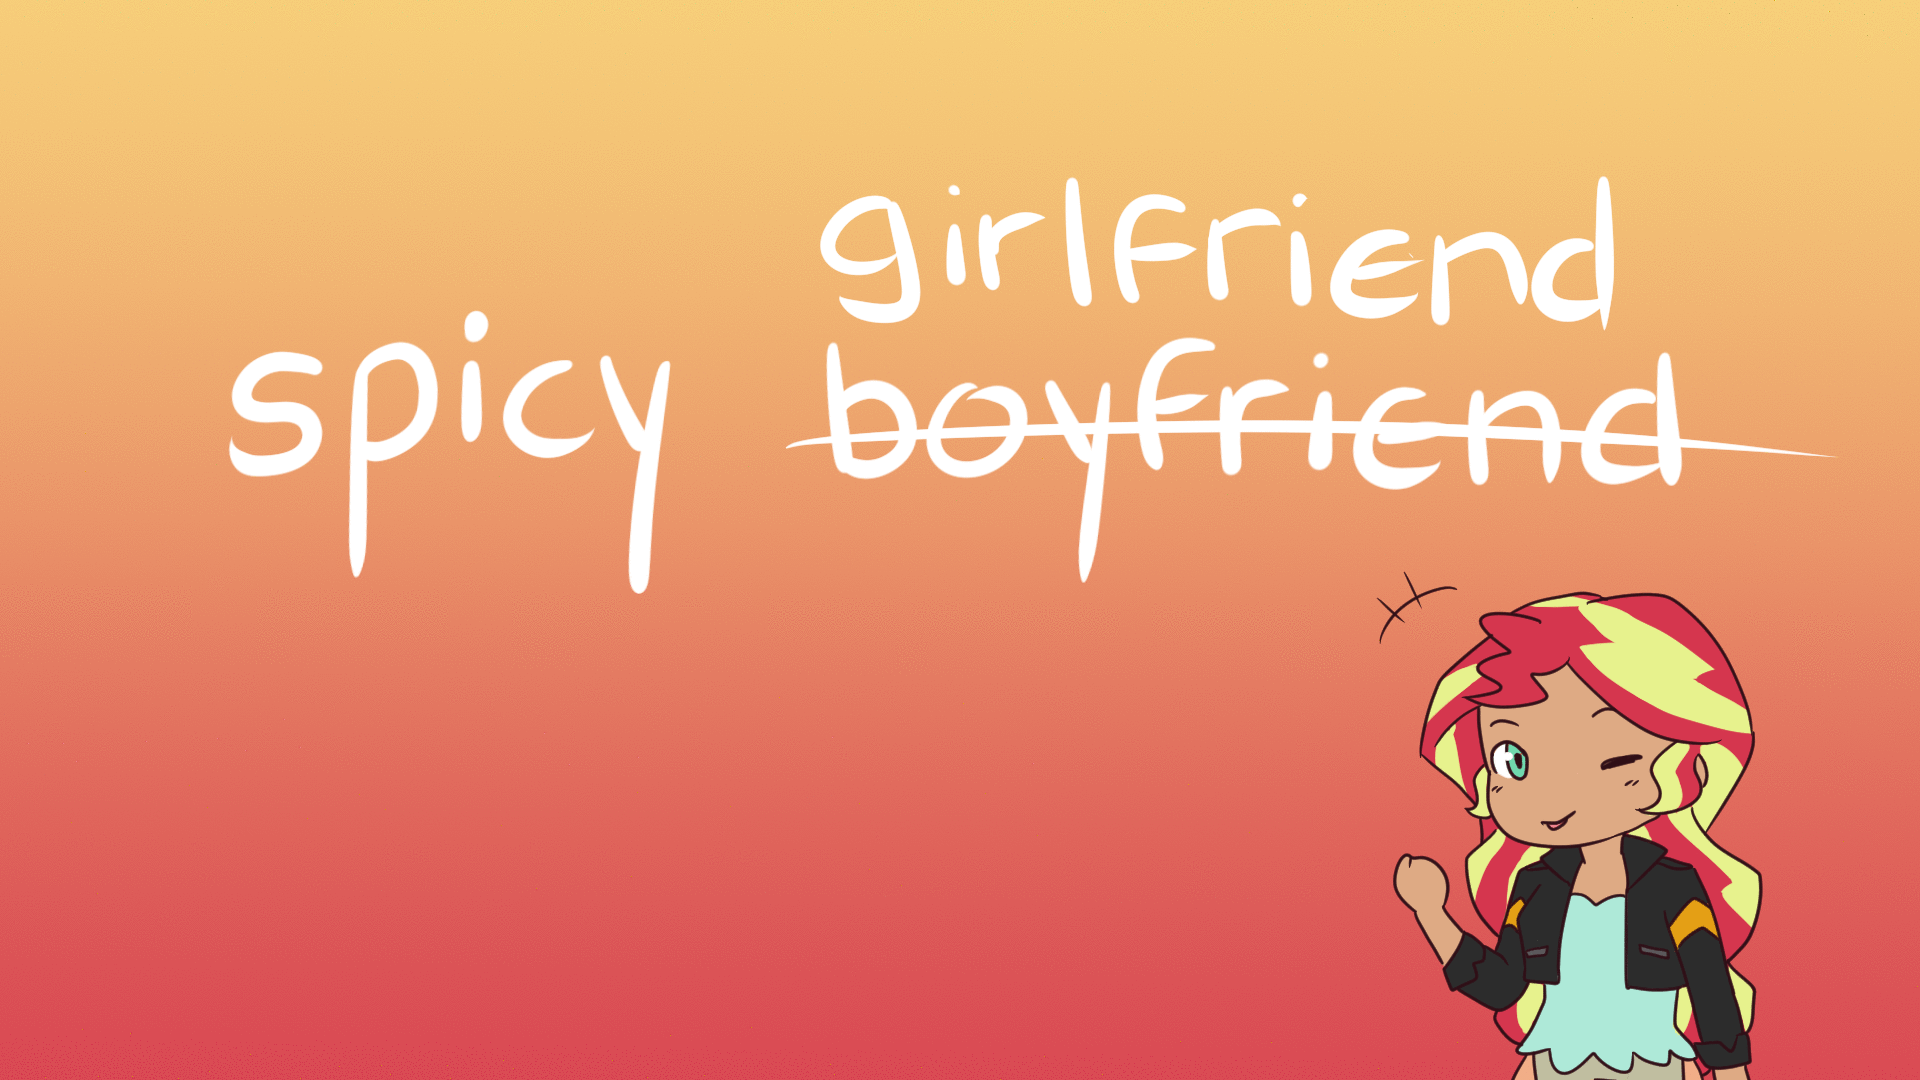 Spicy boyfriend meme